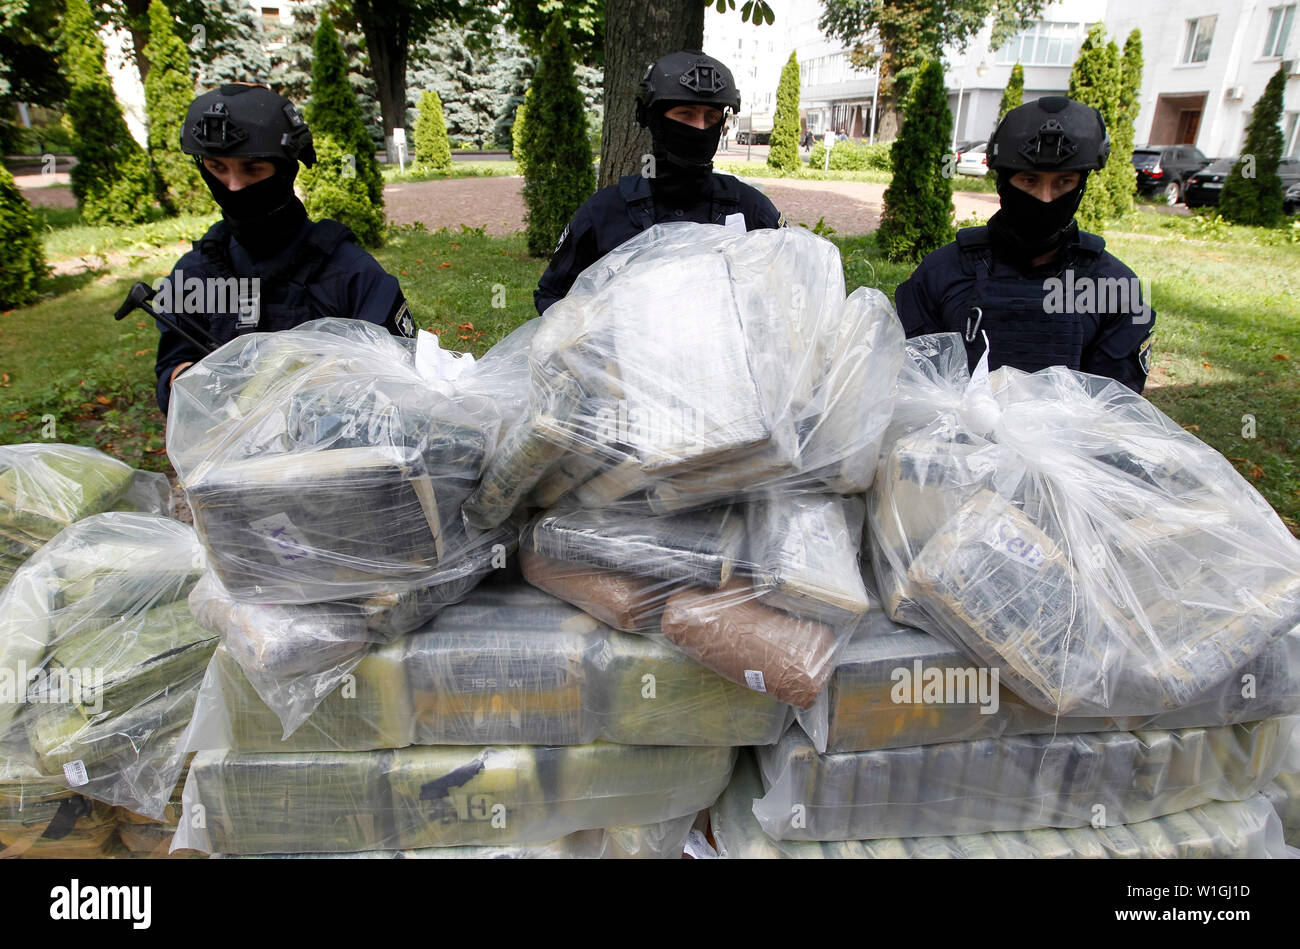 Soporte de agentes de policía de guardia junto a las bolsas de cocaína, que fueron incautados durante una operación policial especial en una conferencia de prensa de la Policía Nacional y el Departamento de Policía Antinarcóticos y el Departamento de la Drug Enforcement Administration (DEA) en el Ministerio de Asuntos Internos en Kiev.La policía de Ucrania, en cooperación con la DEA estadounidense reveló el canal transnacional de drogas de Colombia a la UE y detuvo a los traficantes de drogas y se incautó de 400 kg de cocaína coste estimado de 60 millones de dólares, que iban a ser transferidas desde América Latina a través de Ucrania a Foto de stock